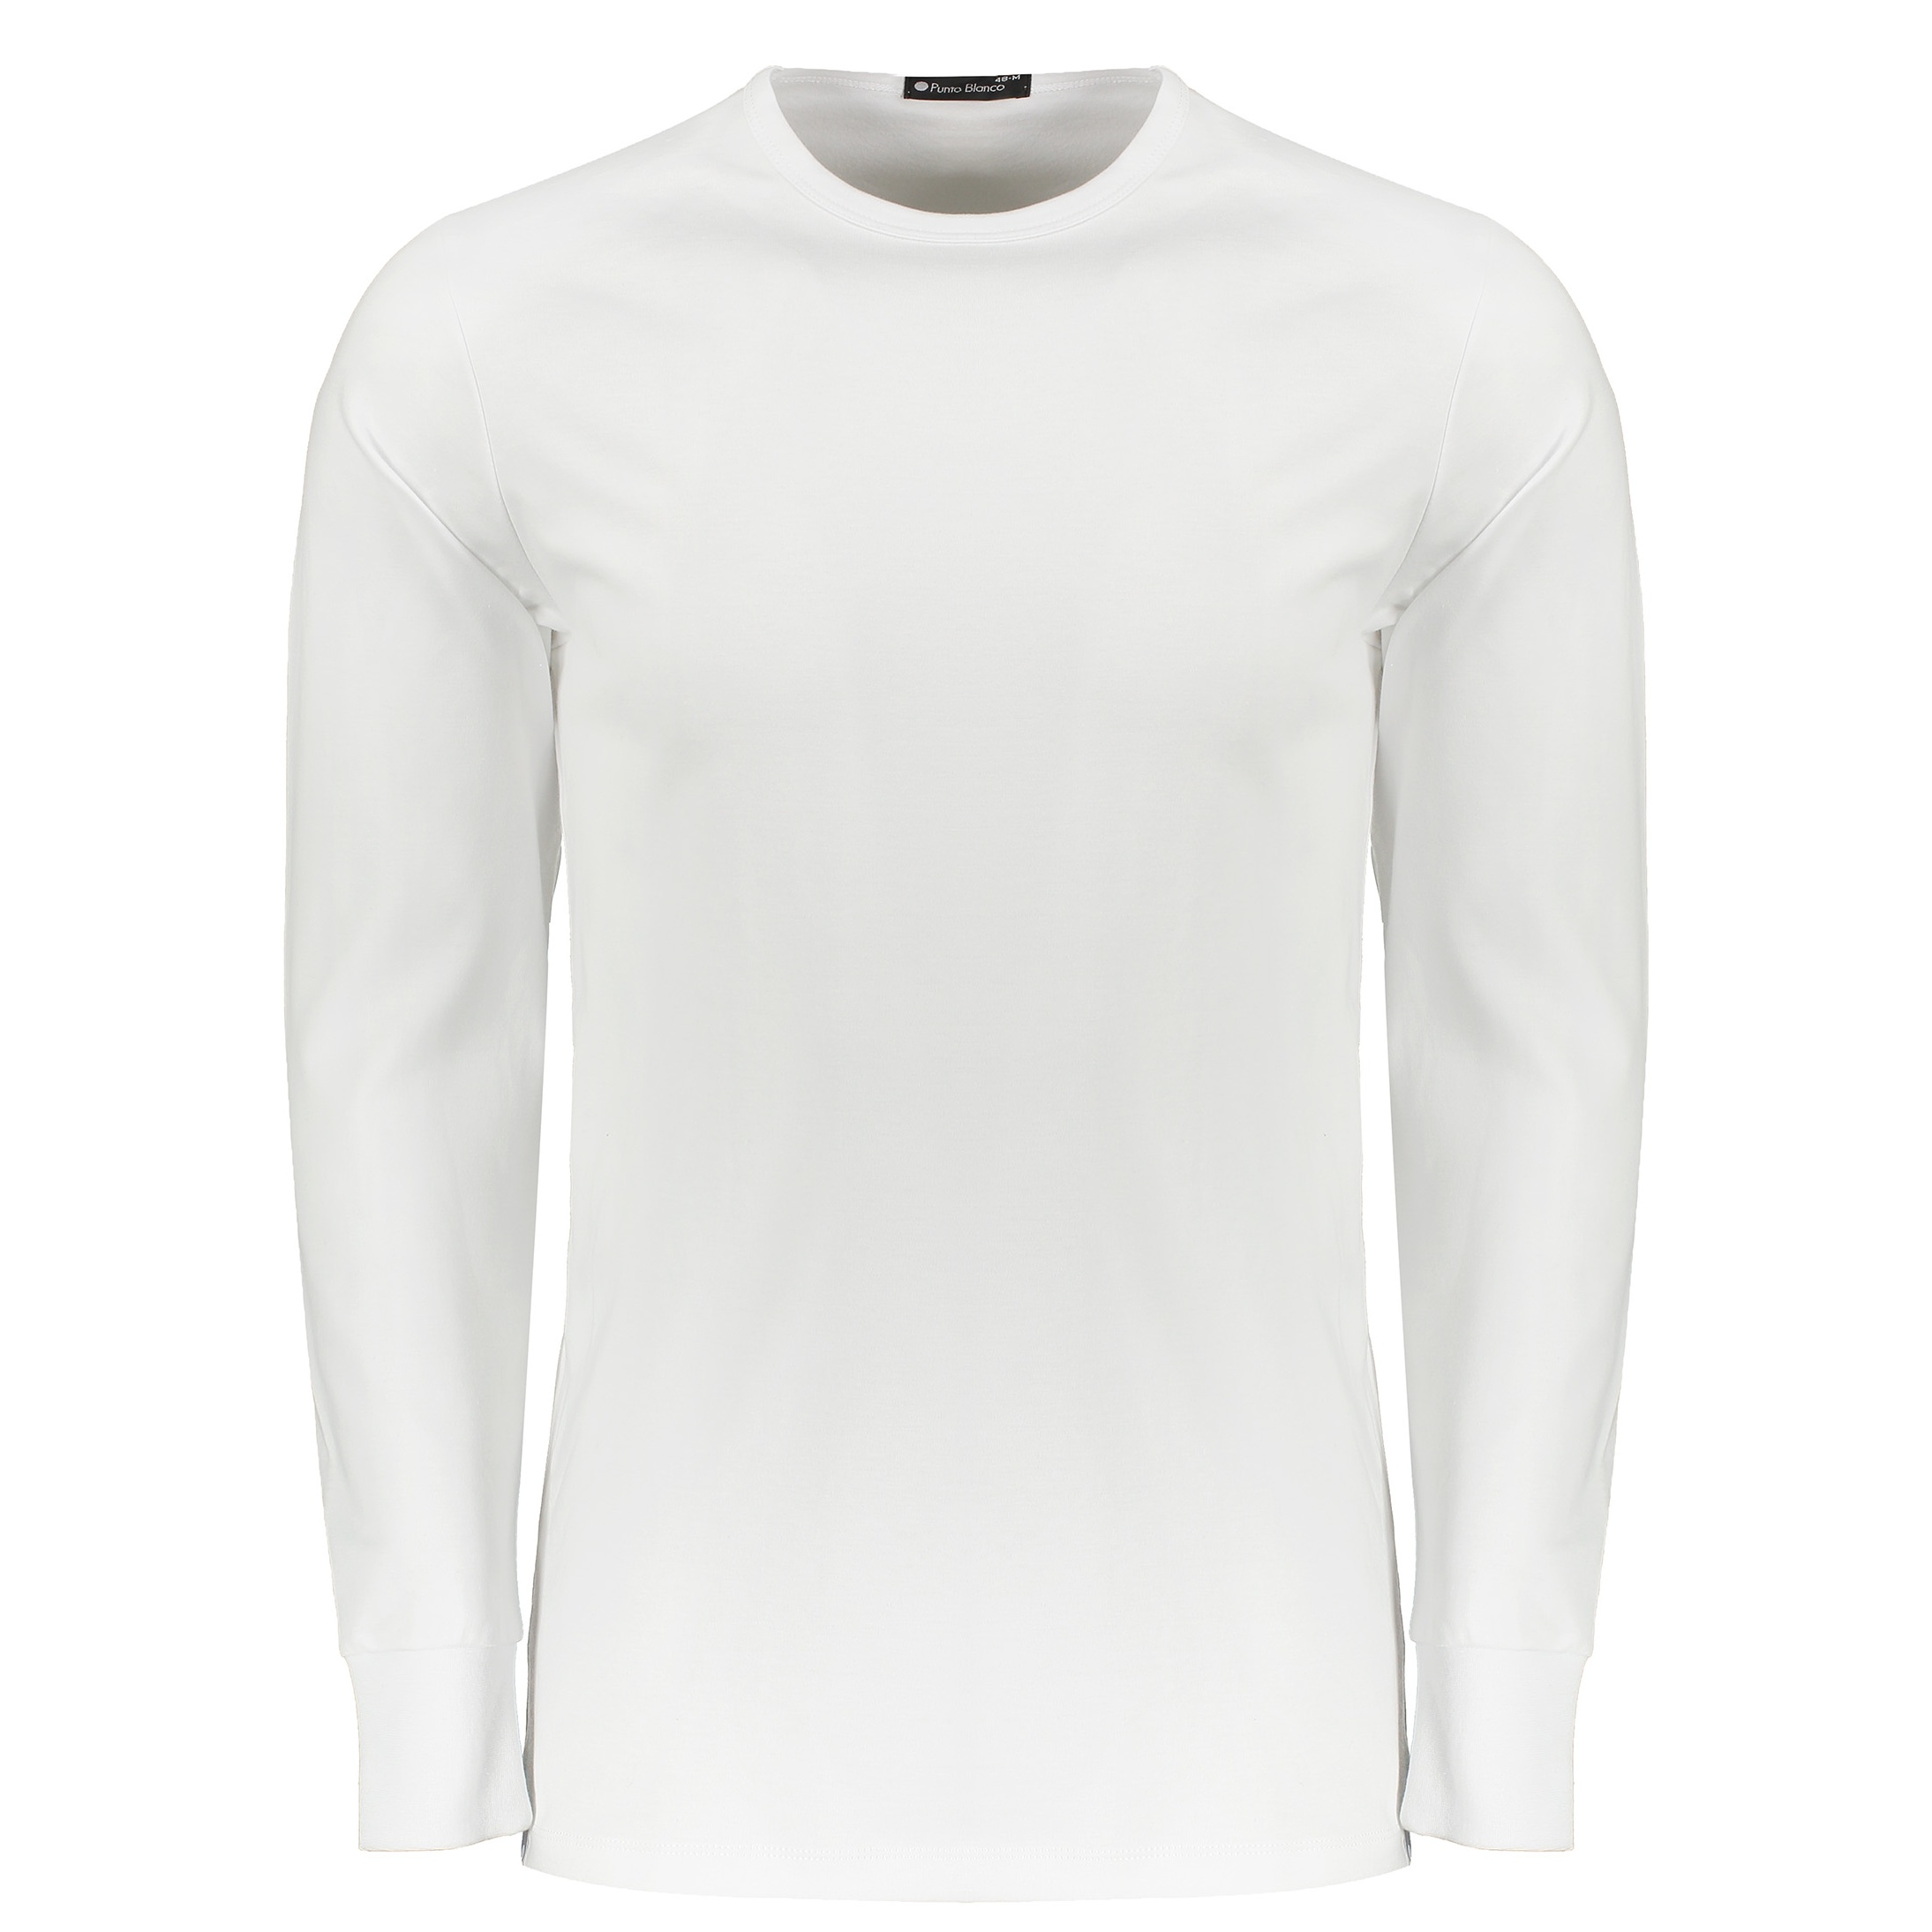 تی شرت راحتی مردانه پونتو بلانکو کد 33186-20-000